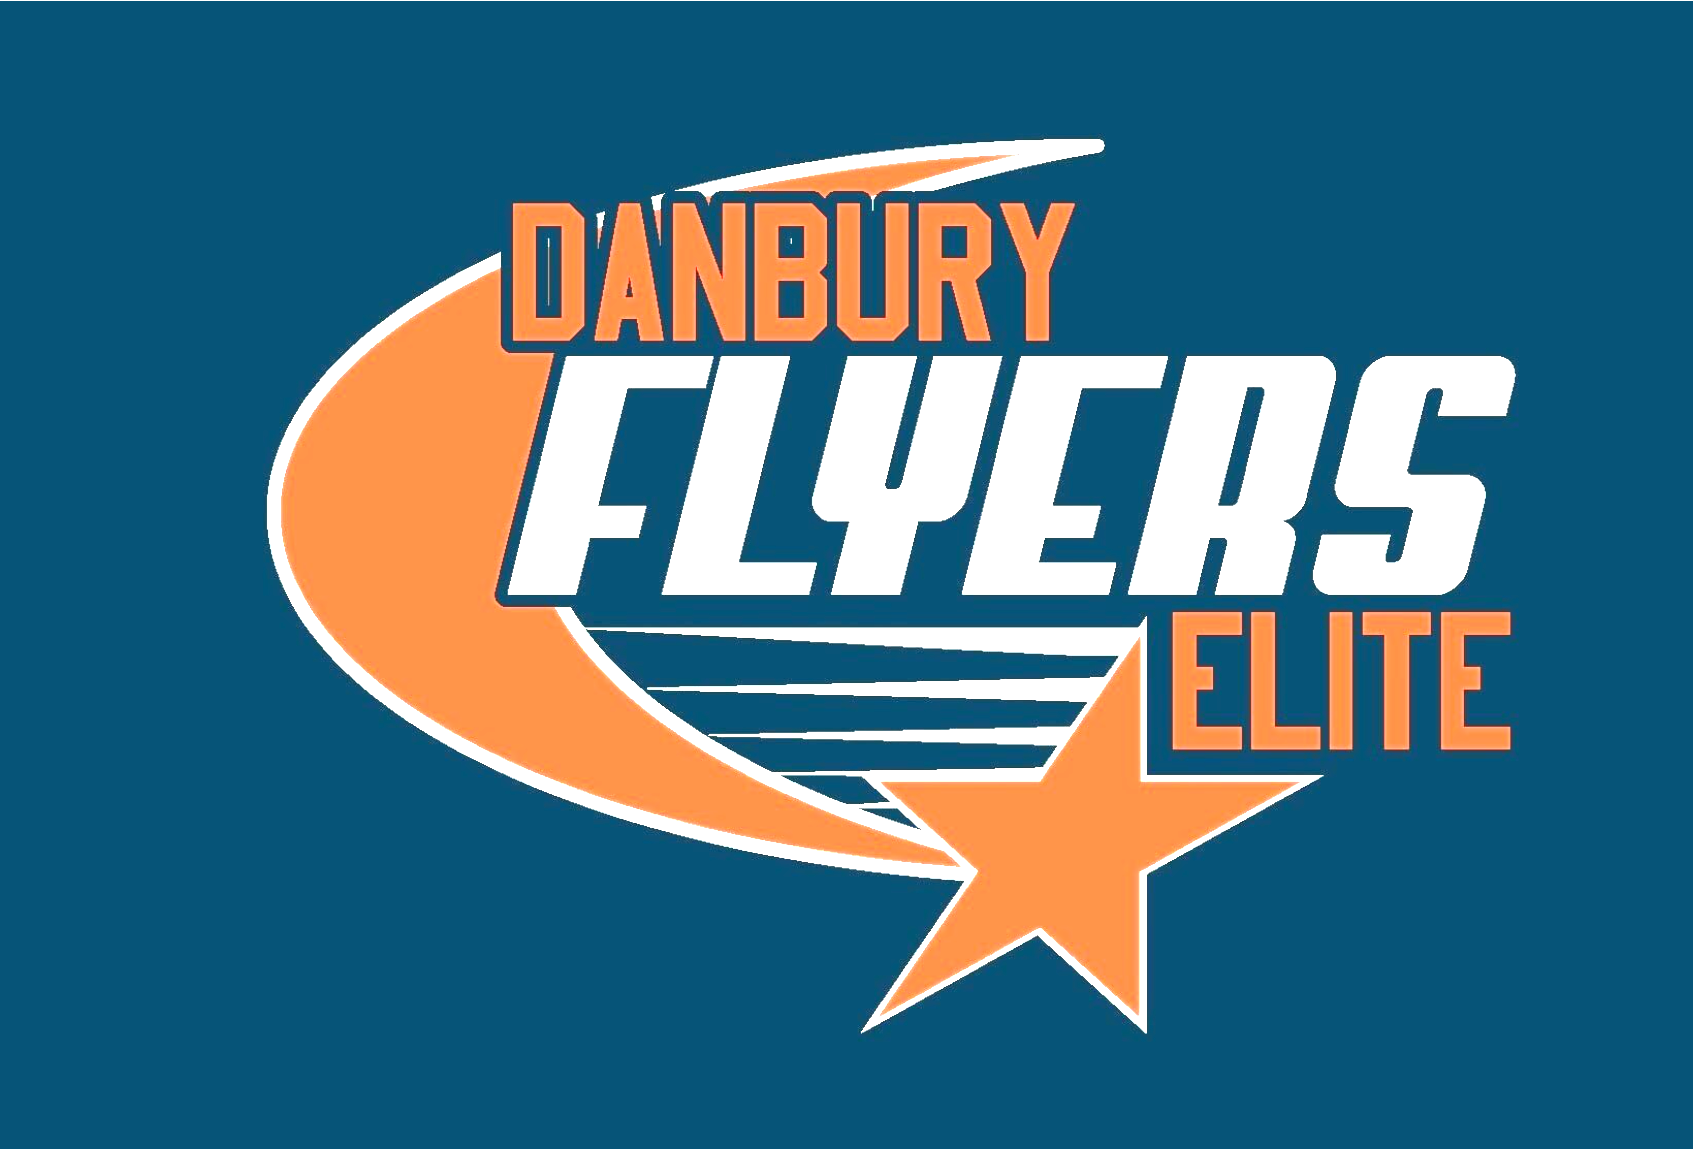 Danbury Flyers Elite